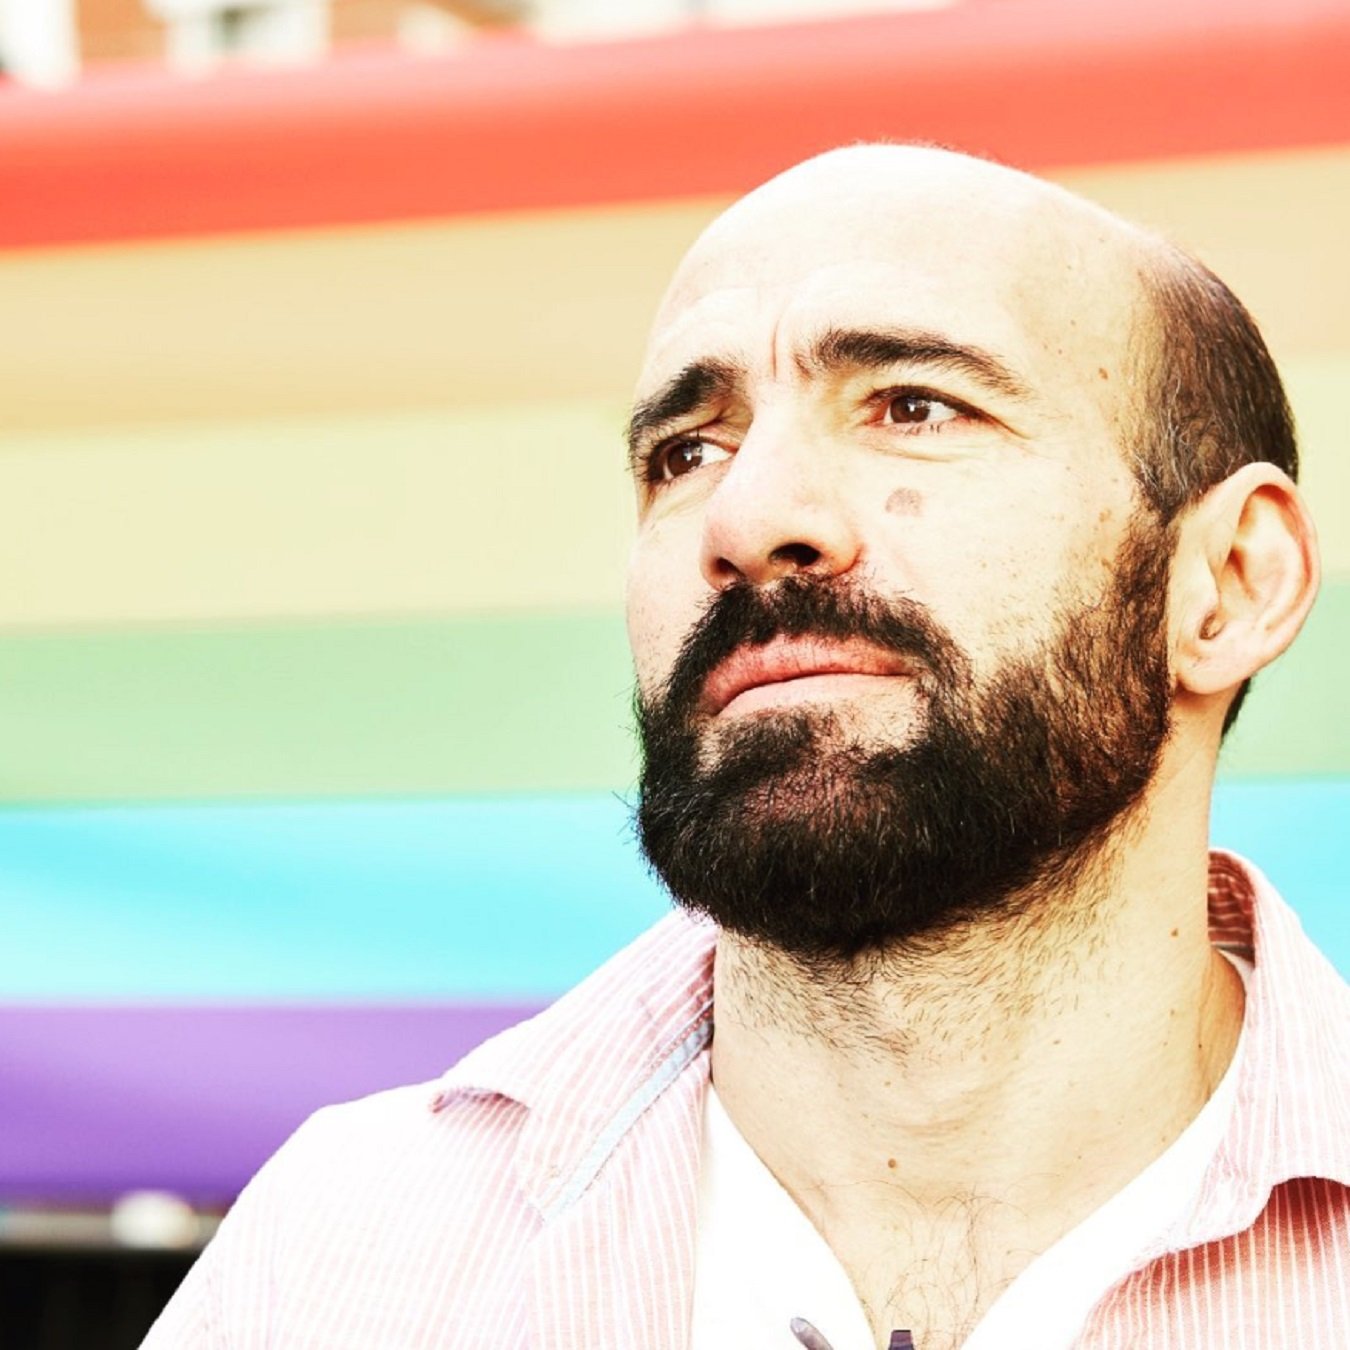 El calvario de Alcalá con la homofobia en el fútbol: "Lloraba sin que me vieran"